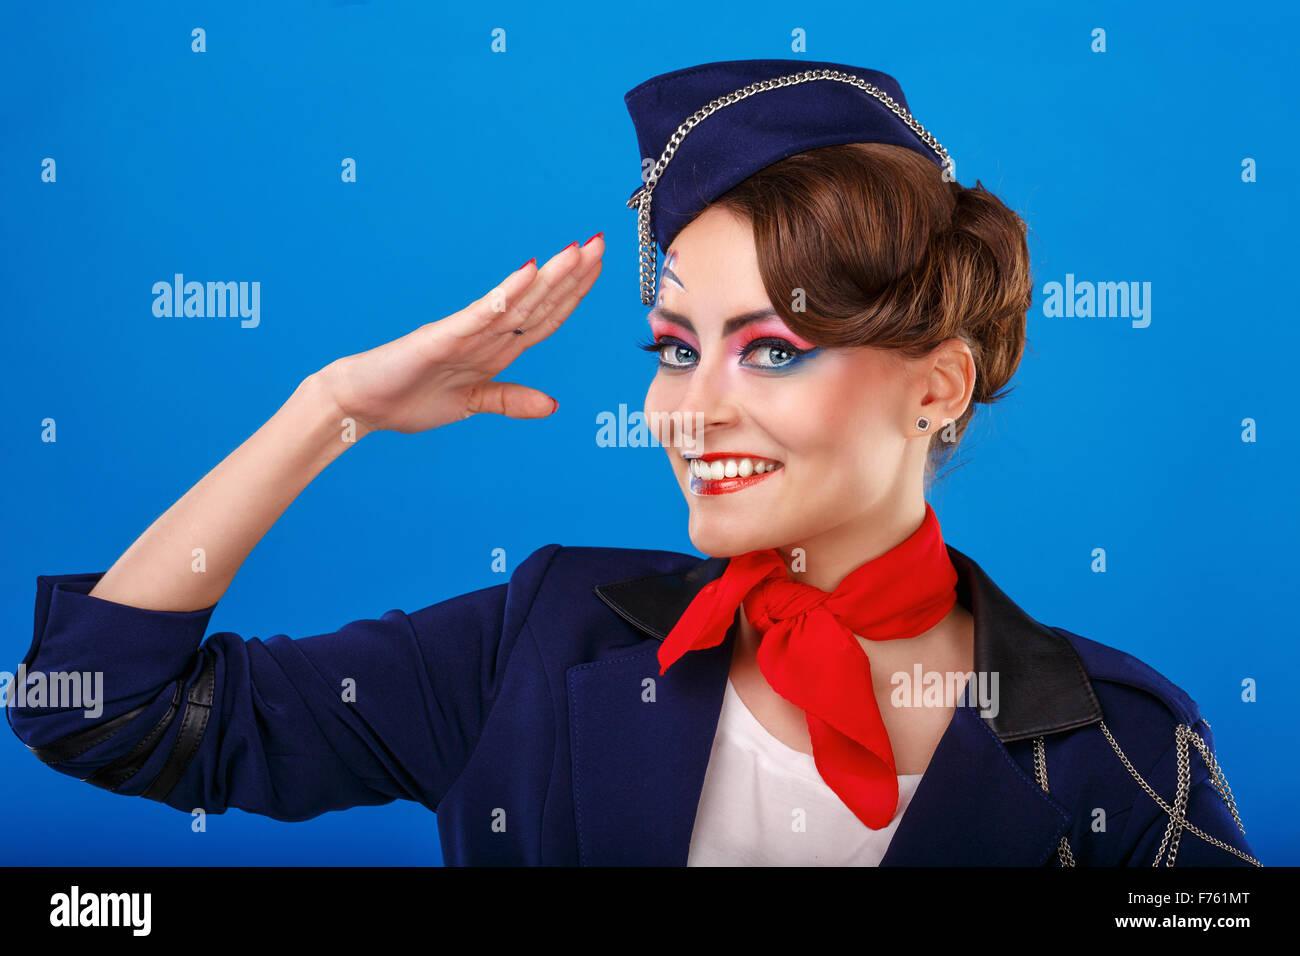 Face à l'hôtesse de l'art rend hommage. Jeune fille attirante dans un costume bleu de bord. Les services aériens. Service. Banque D'Images